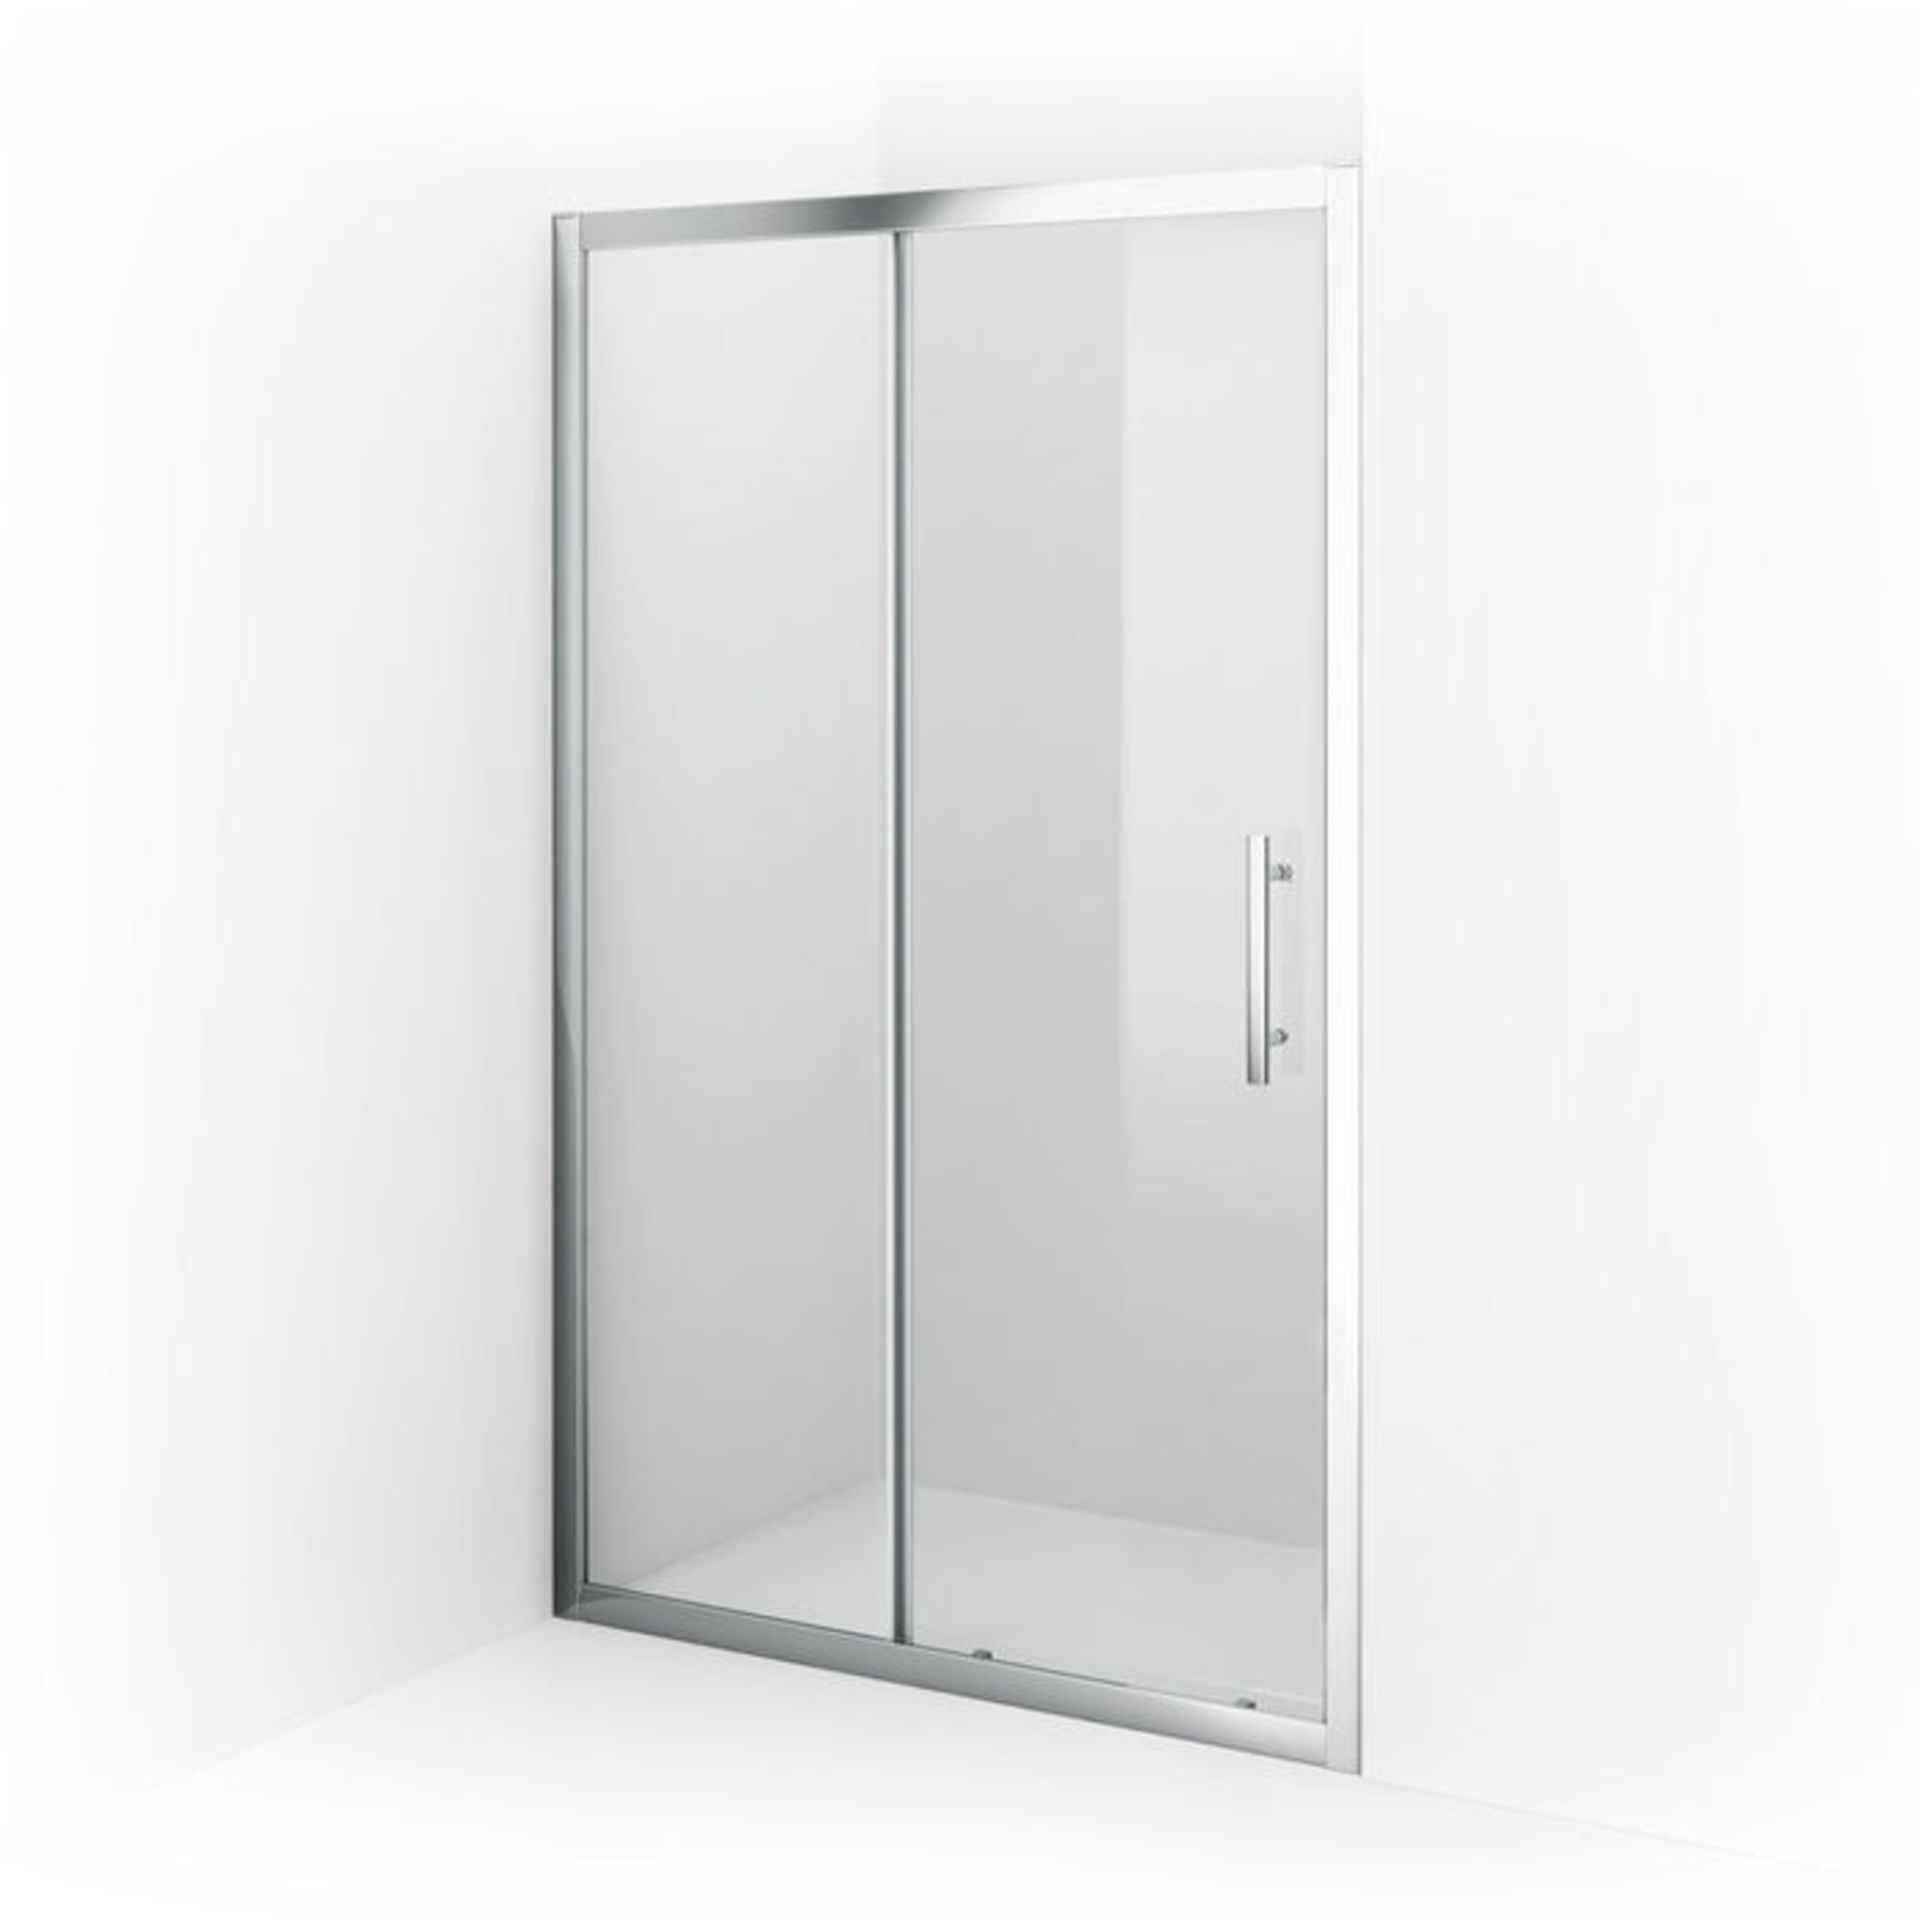 (MQ68) 1200mm - 8mm - Designer EasyClean Sliding Shower Door. RRP £374.99. 8mm EasyClean glass... - Image 4 of 5